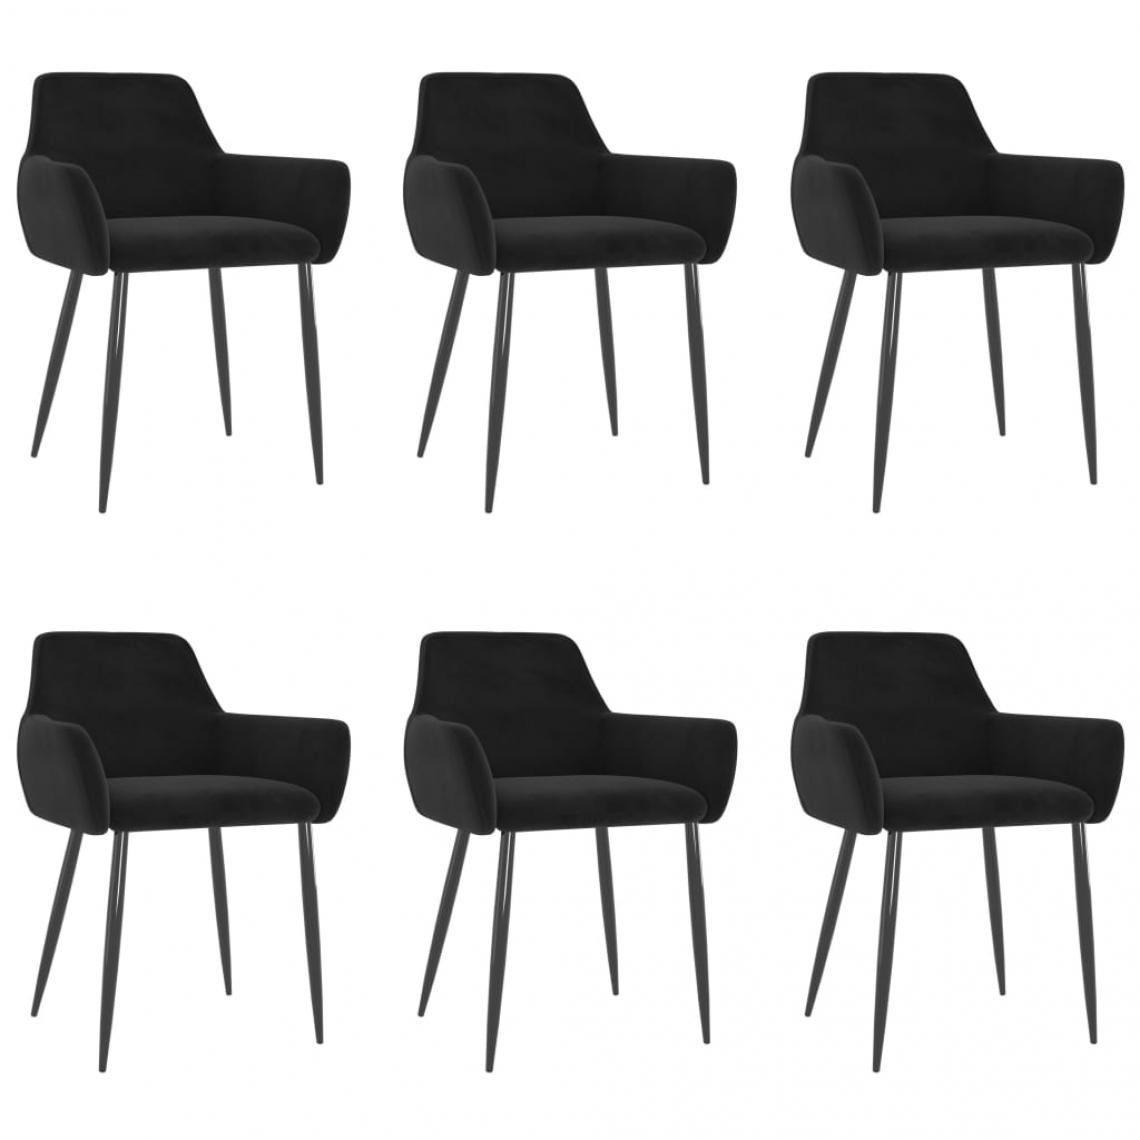 Decoshop26 - Lot de 6 chaises de salle à manger cuisine design moderne velours noir CDS022736 - Chaises